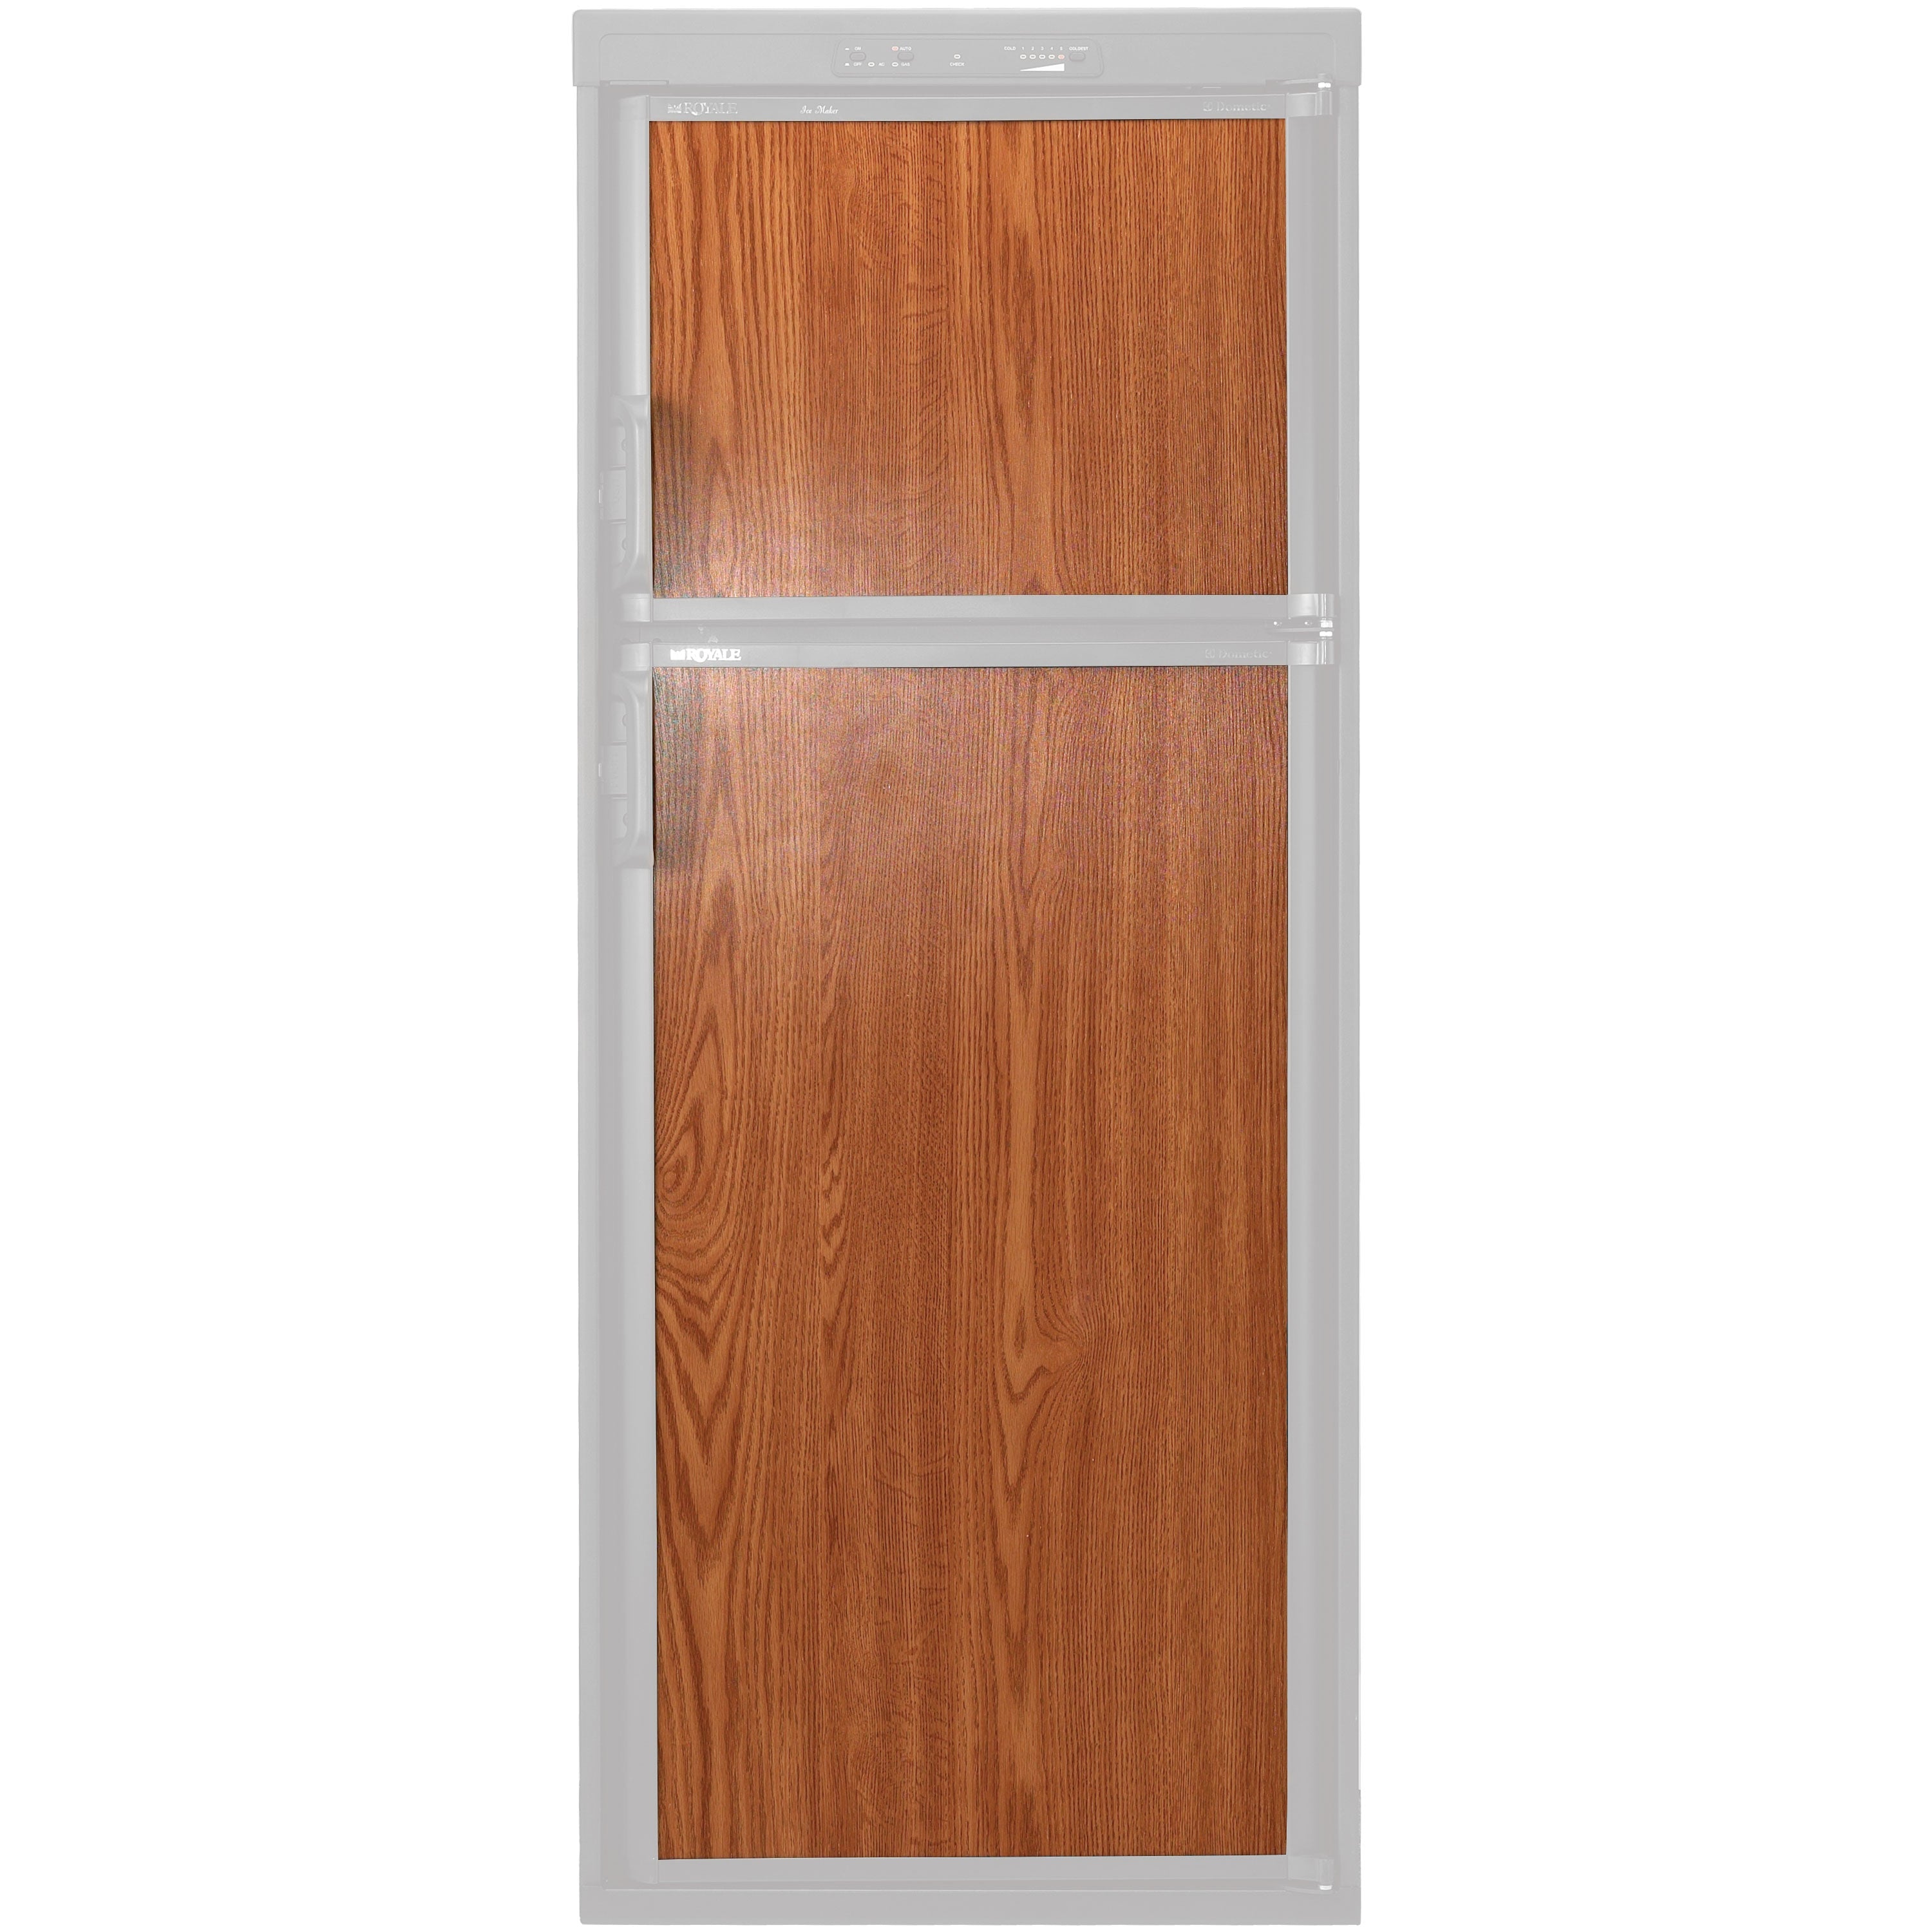 Dometic 3106863.156B Refrigerator Door Panel - Wood Grain, Both Panels 3762